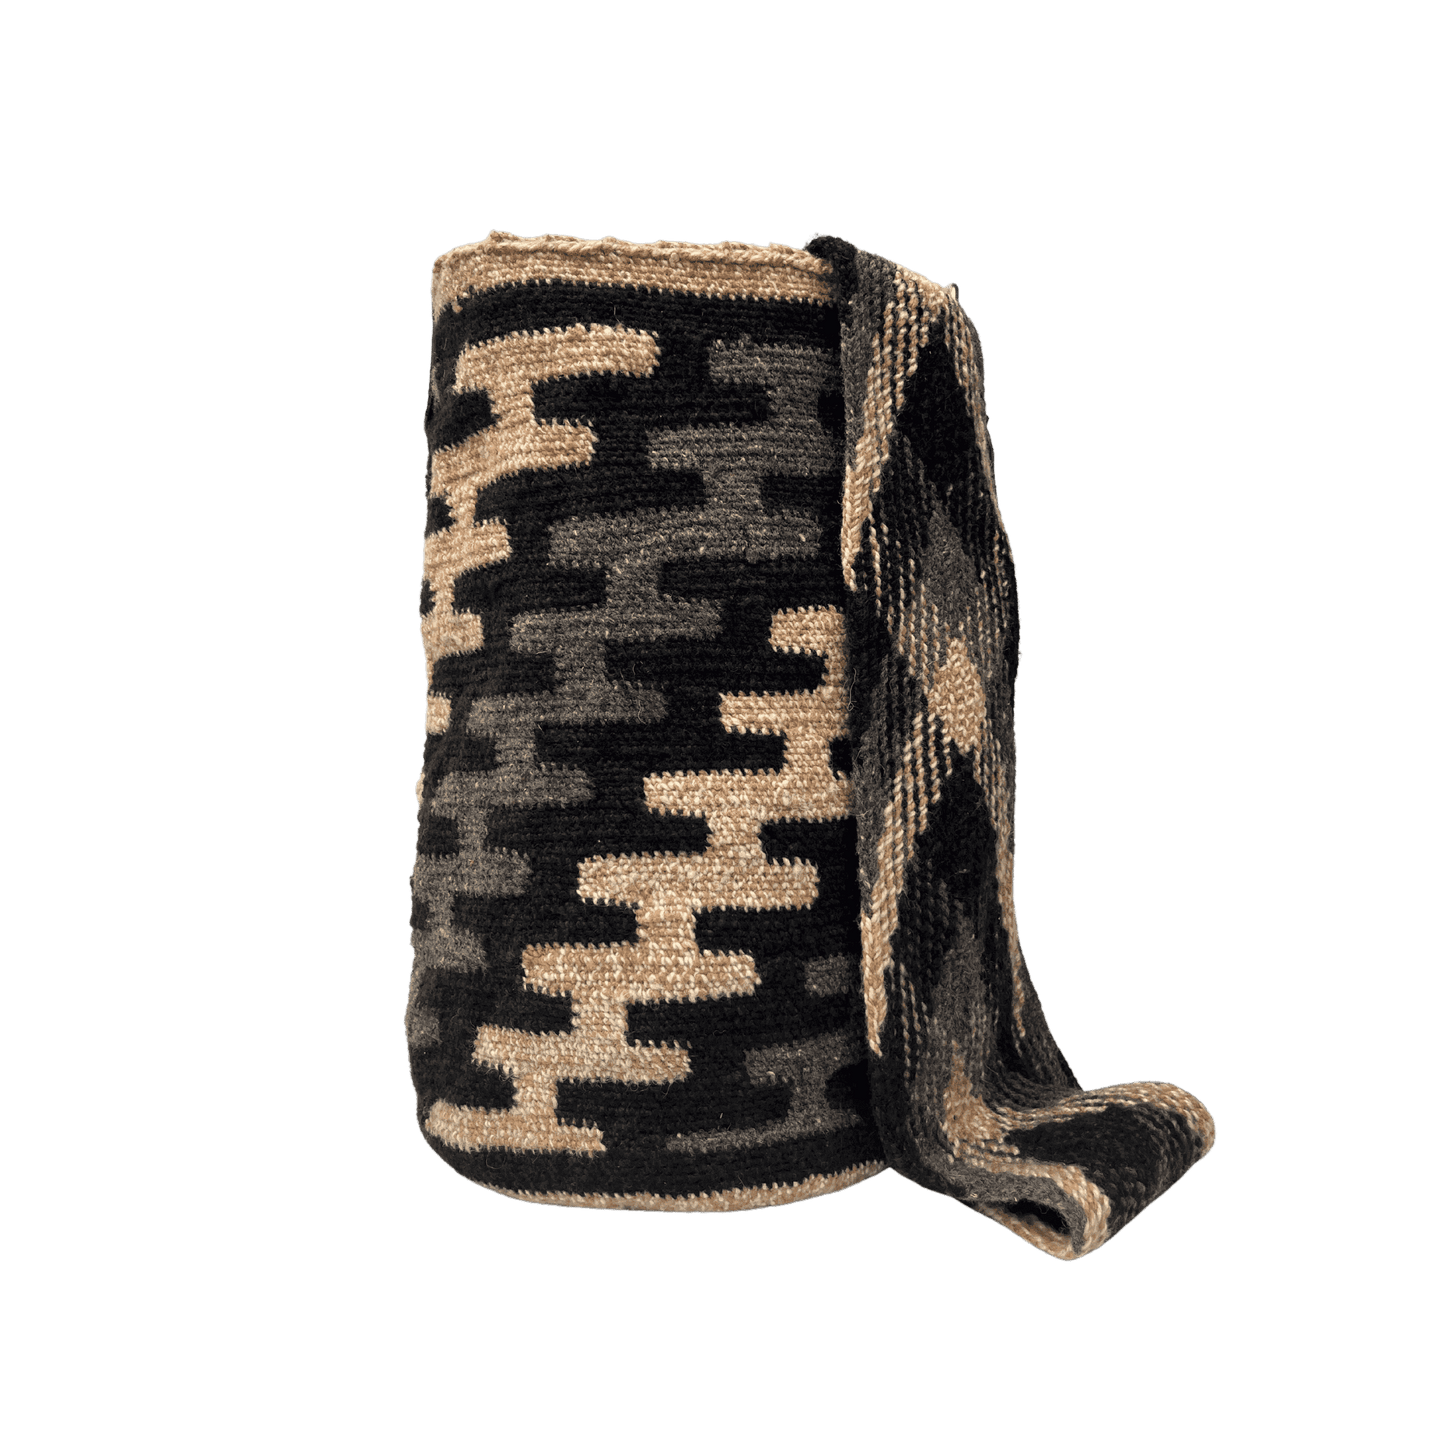 mochila arhuaca tradicional para mujer con correa cuero y herrajes